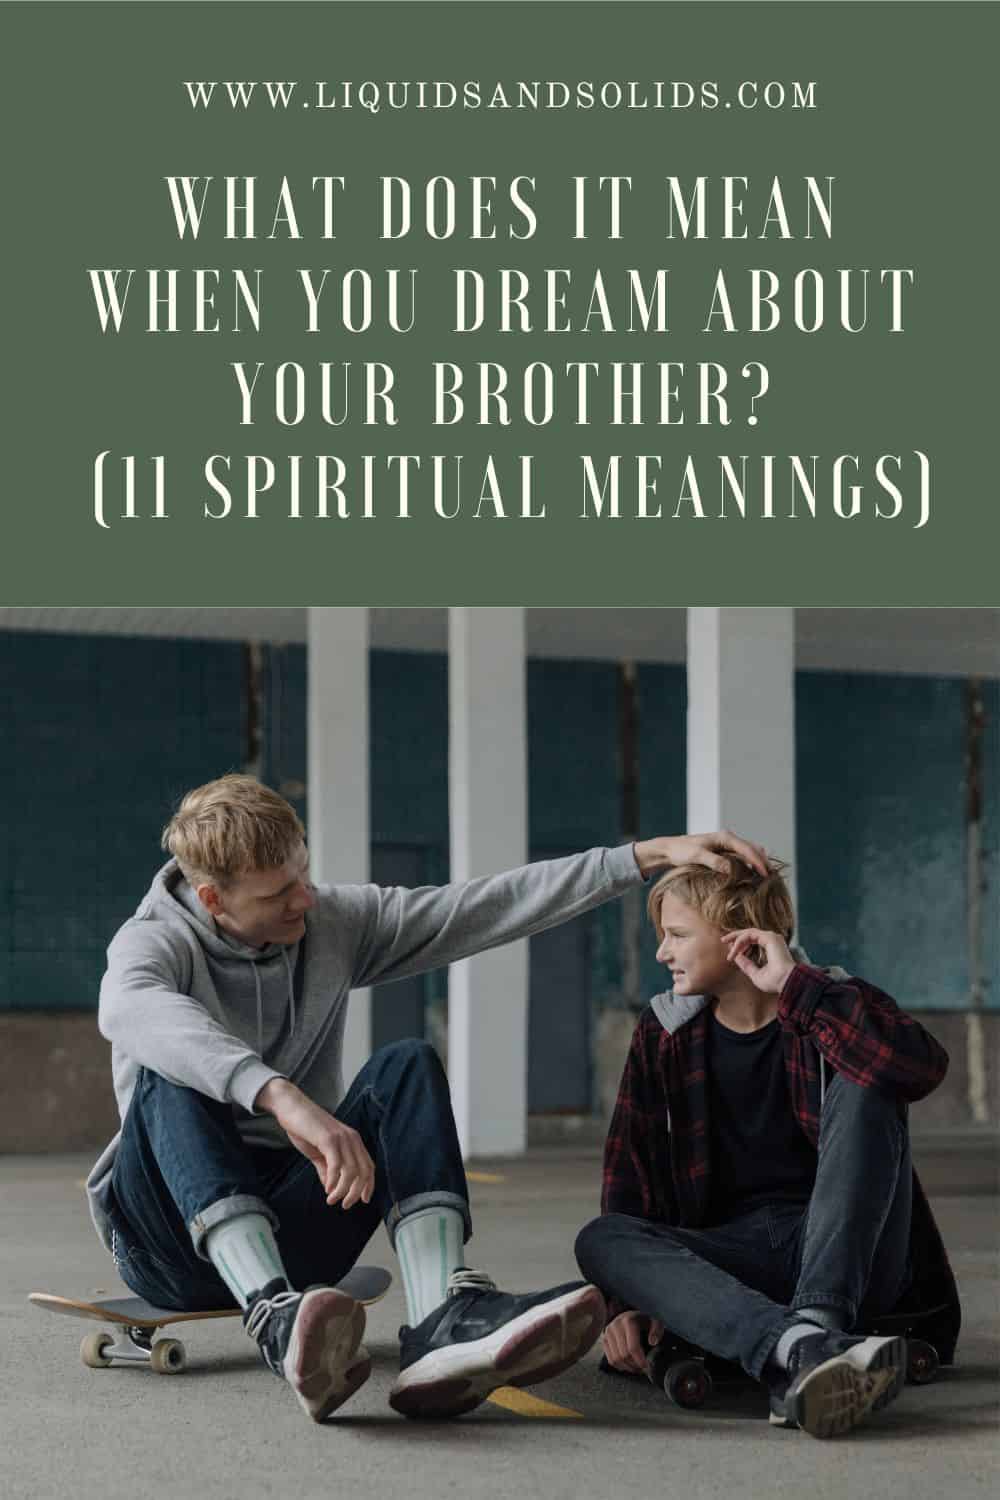  ماذا يعني عندما تحلم بأخيك؟ (11 معاني روحية)